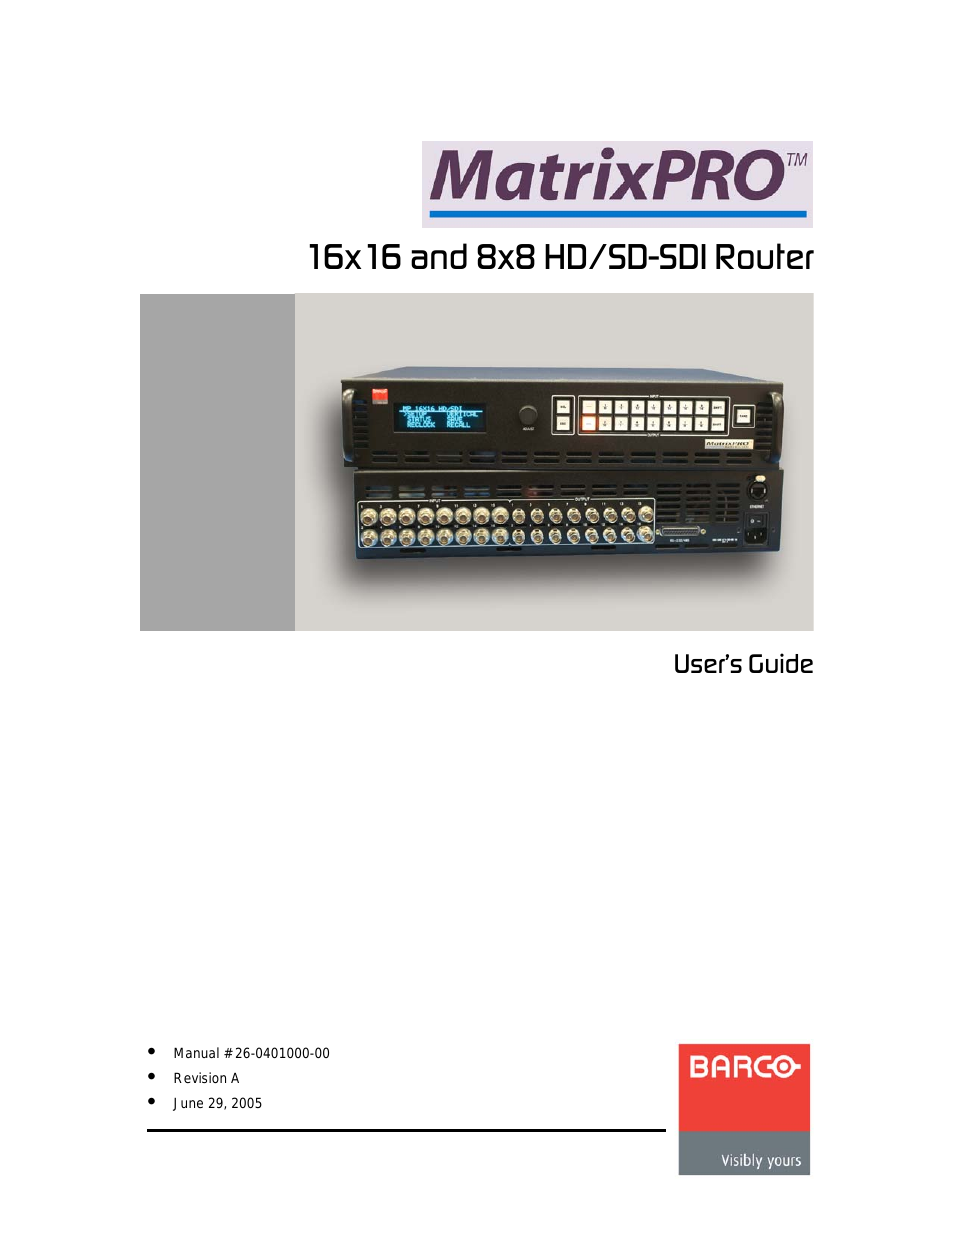 MatrixPRO 8x8